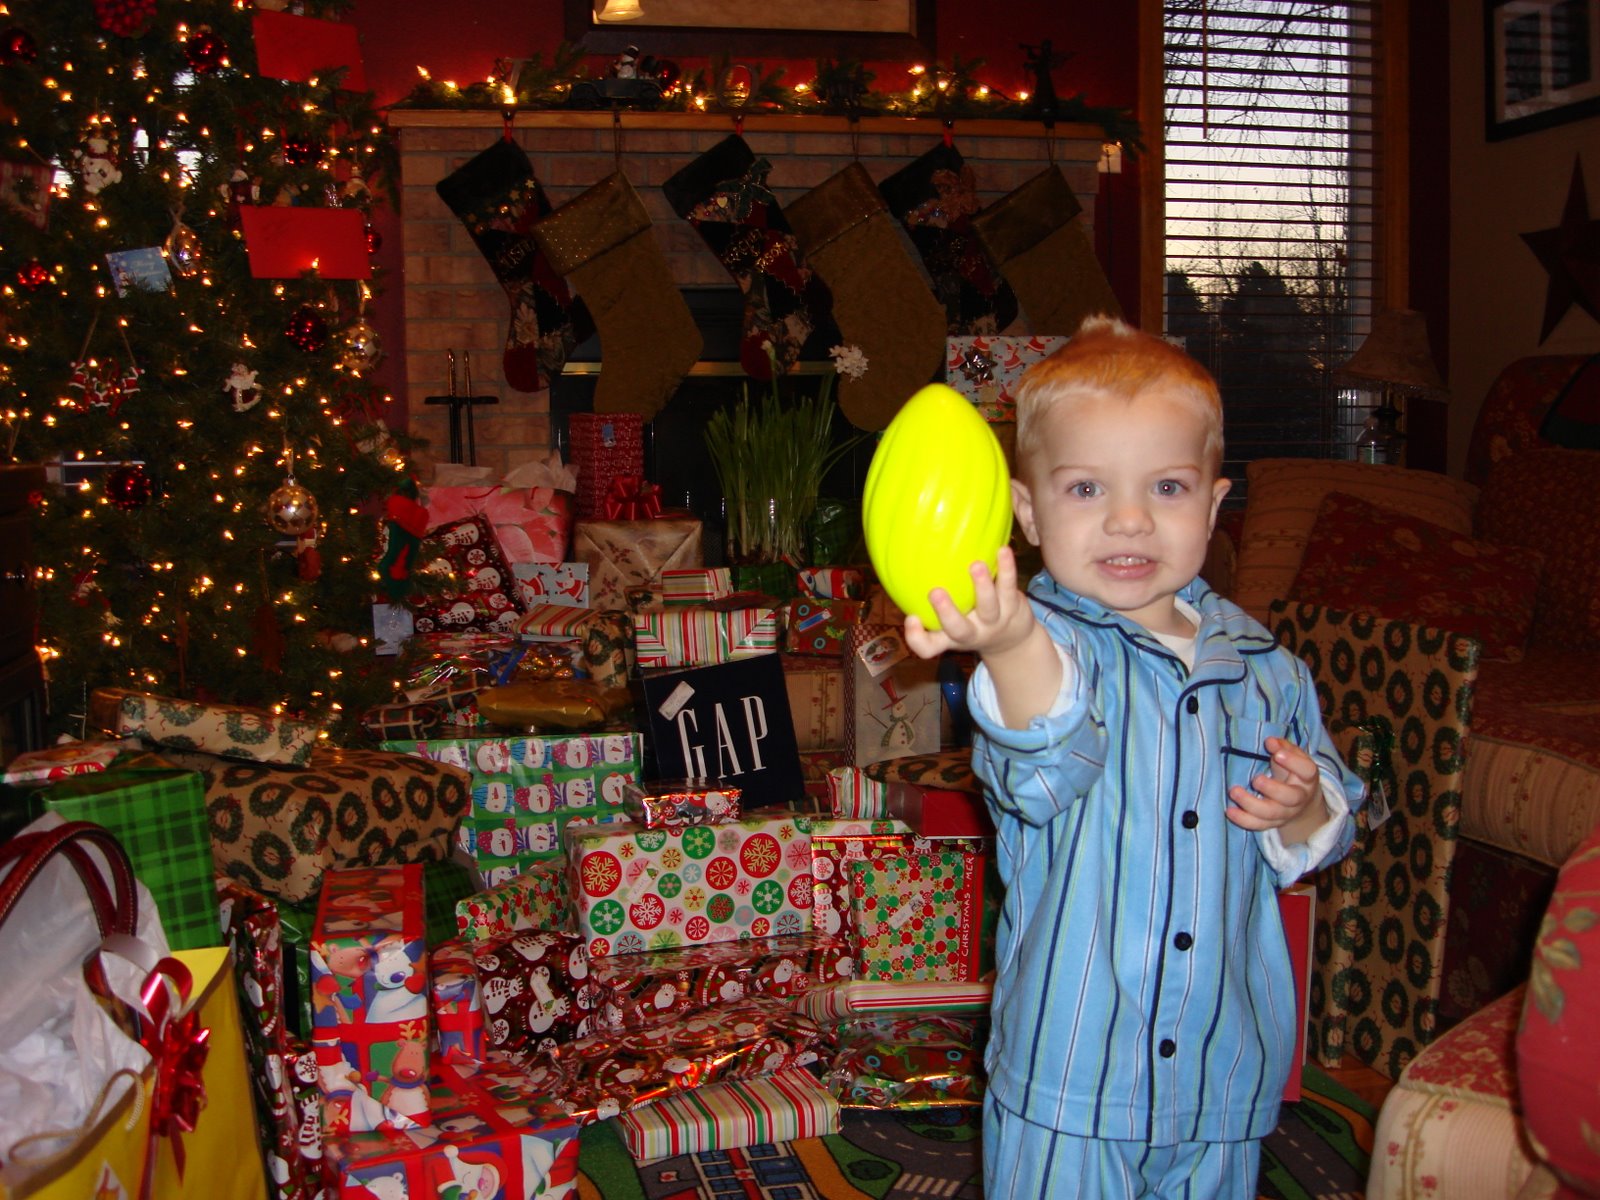 Keaton and his football he got for Christmas